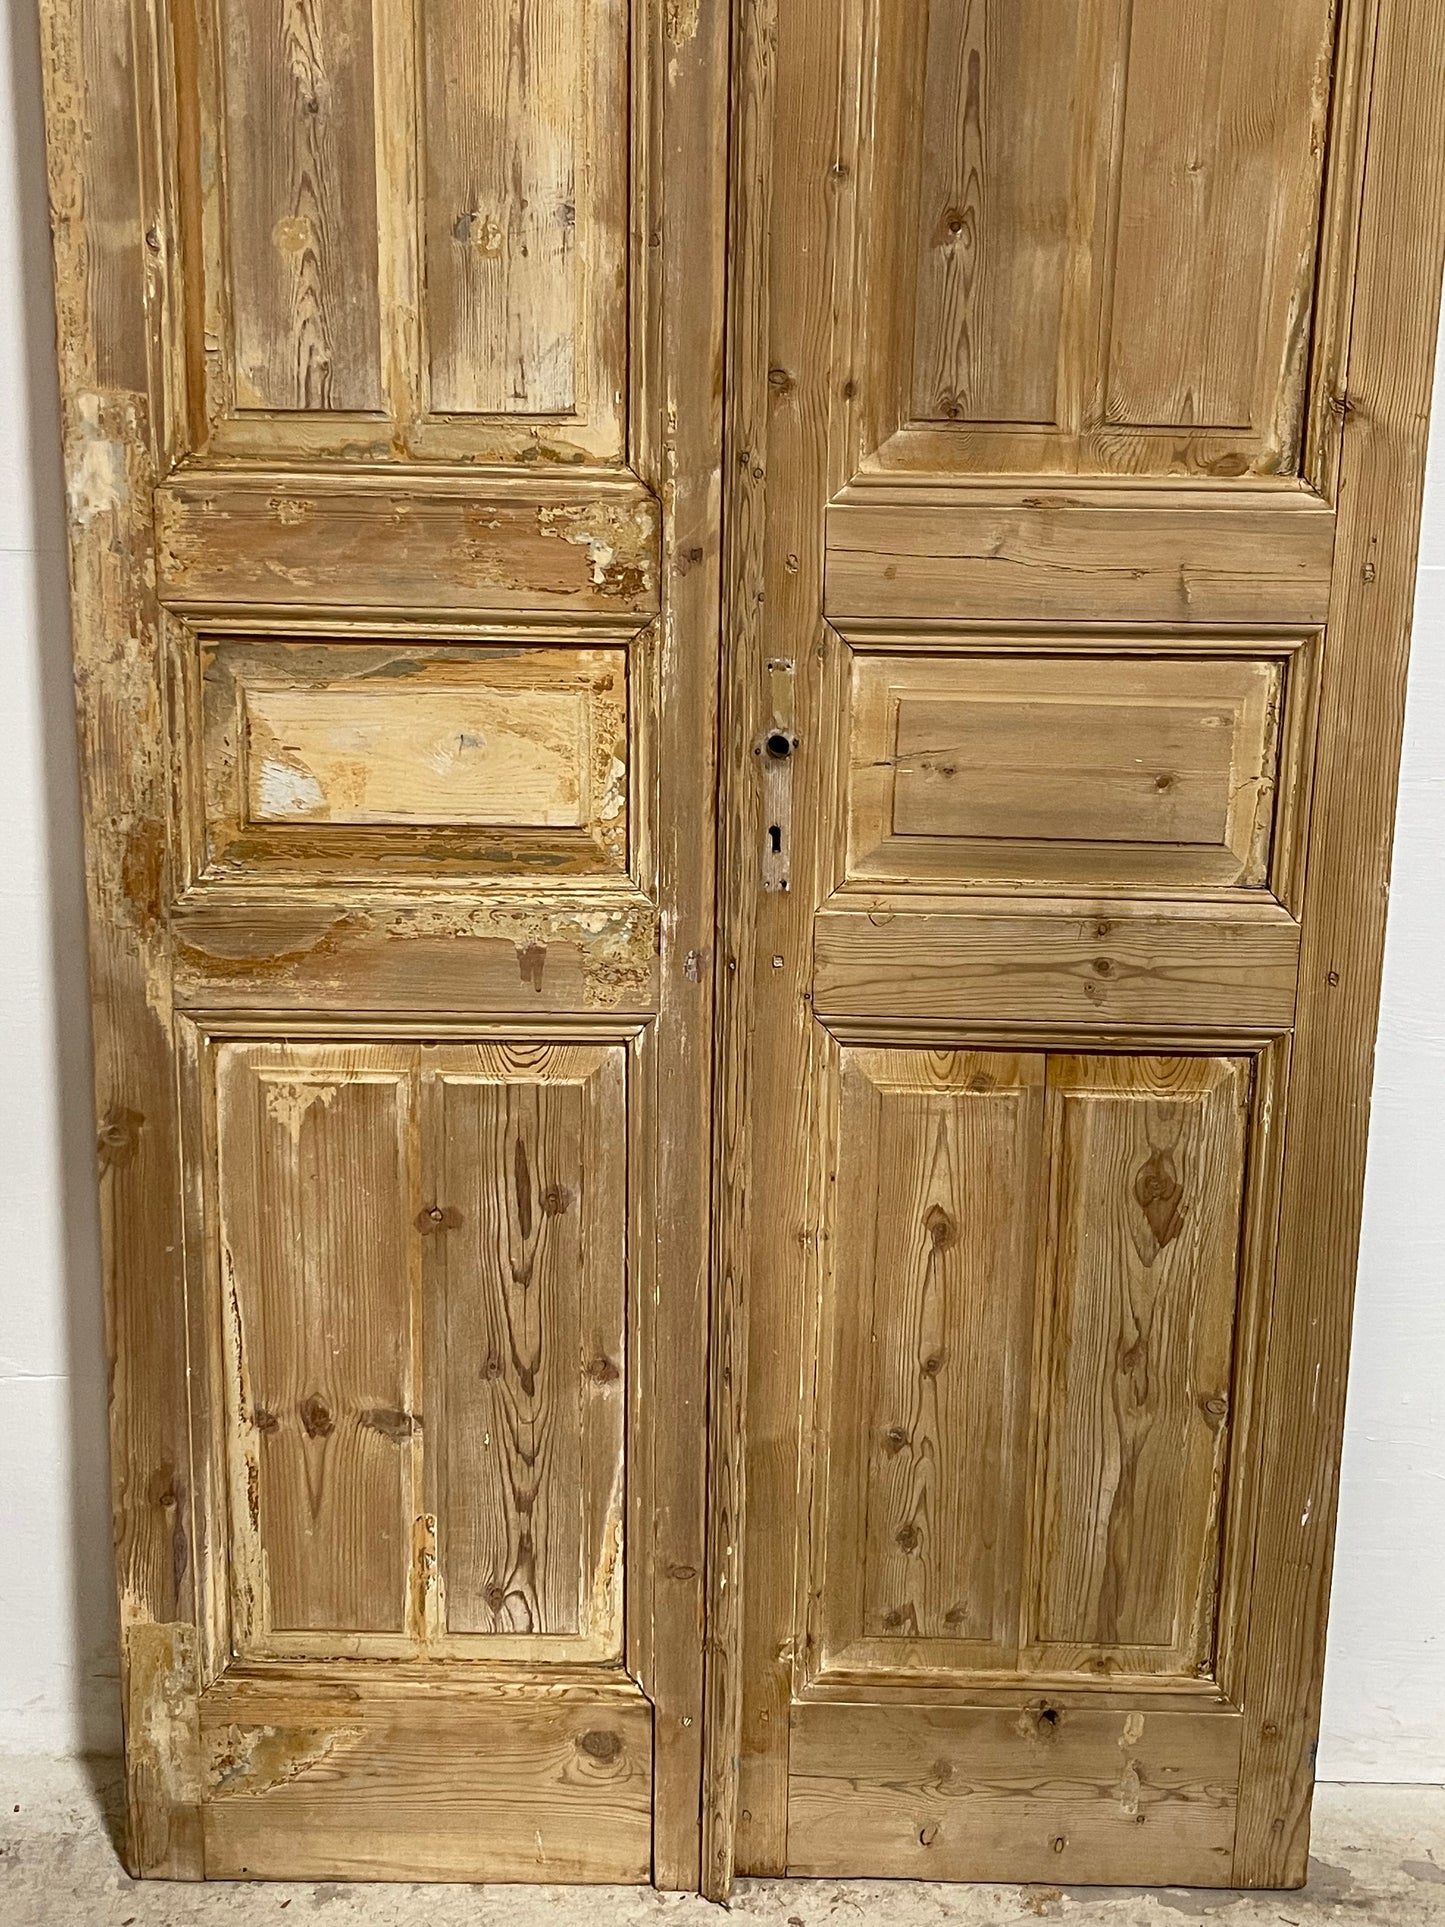 Antique French panel Doors (96.75x44.25) J652